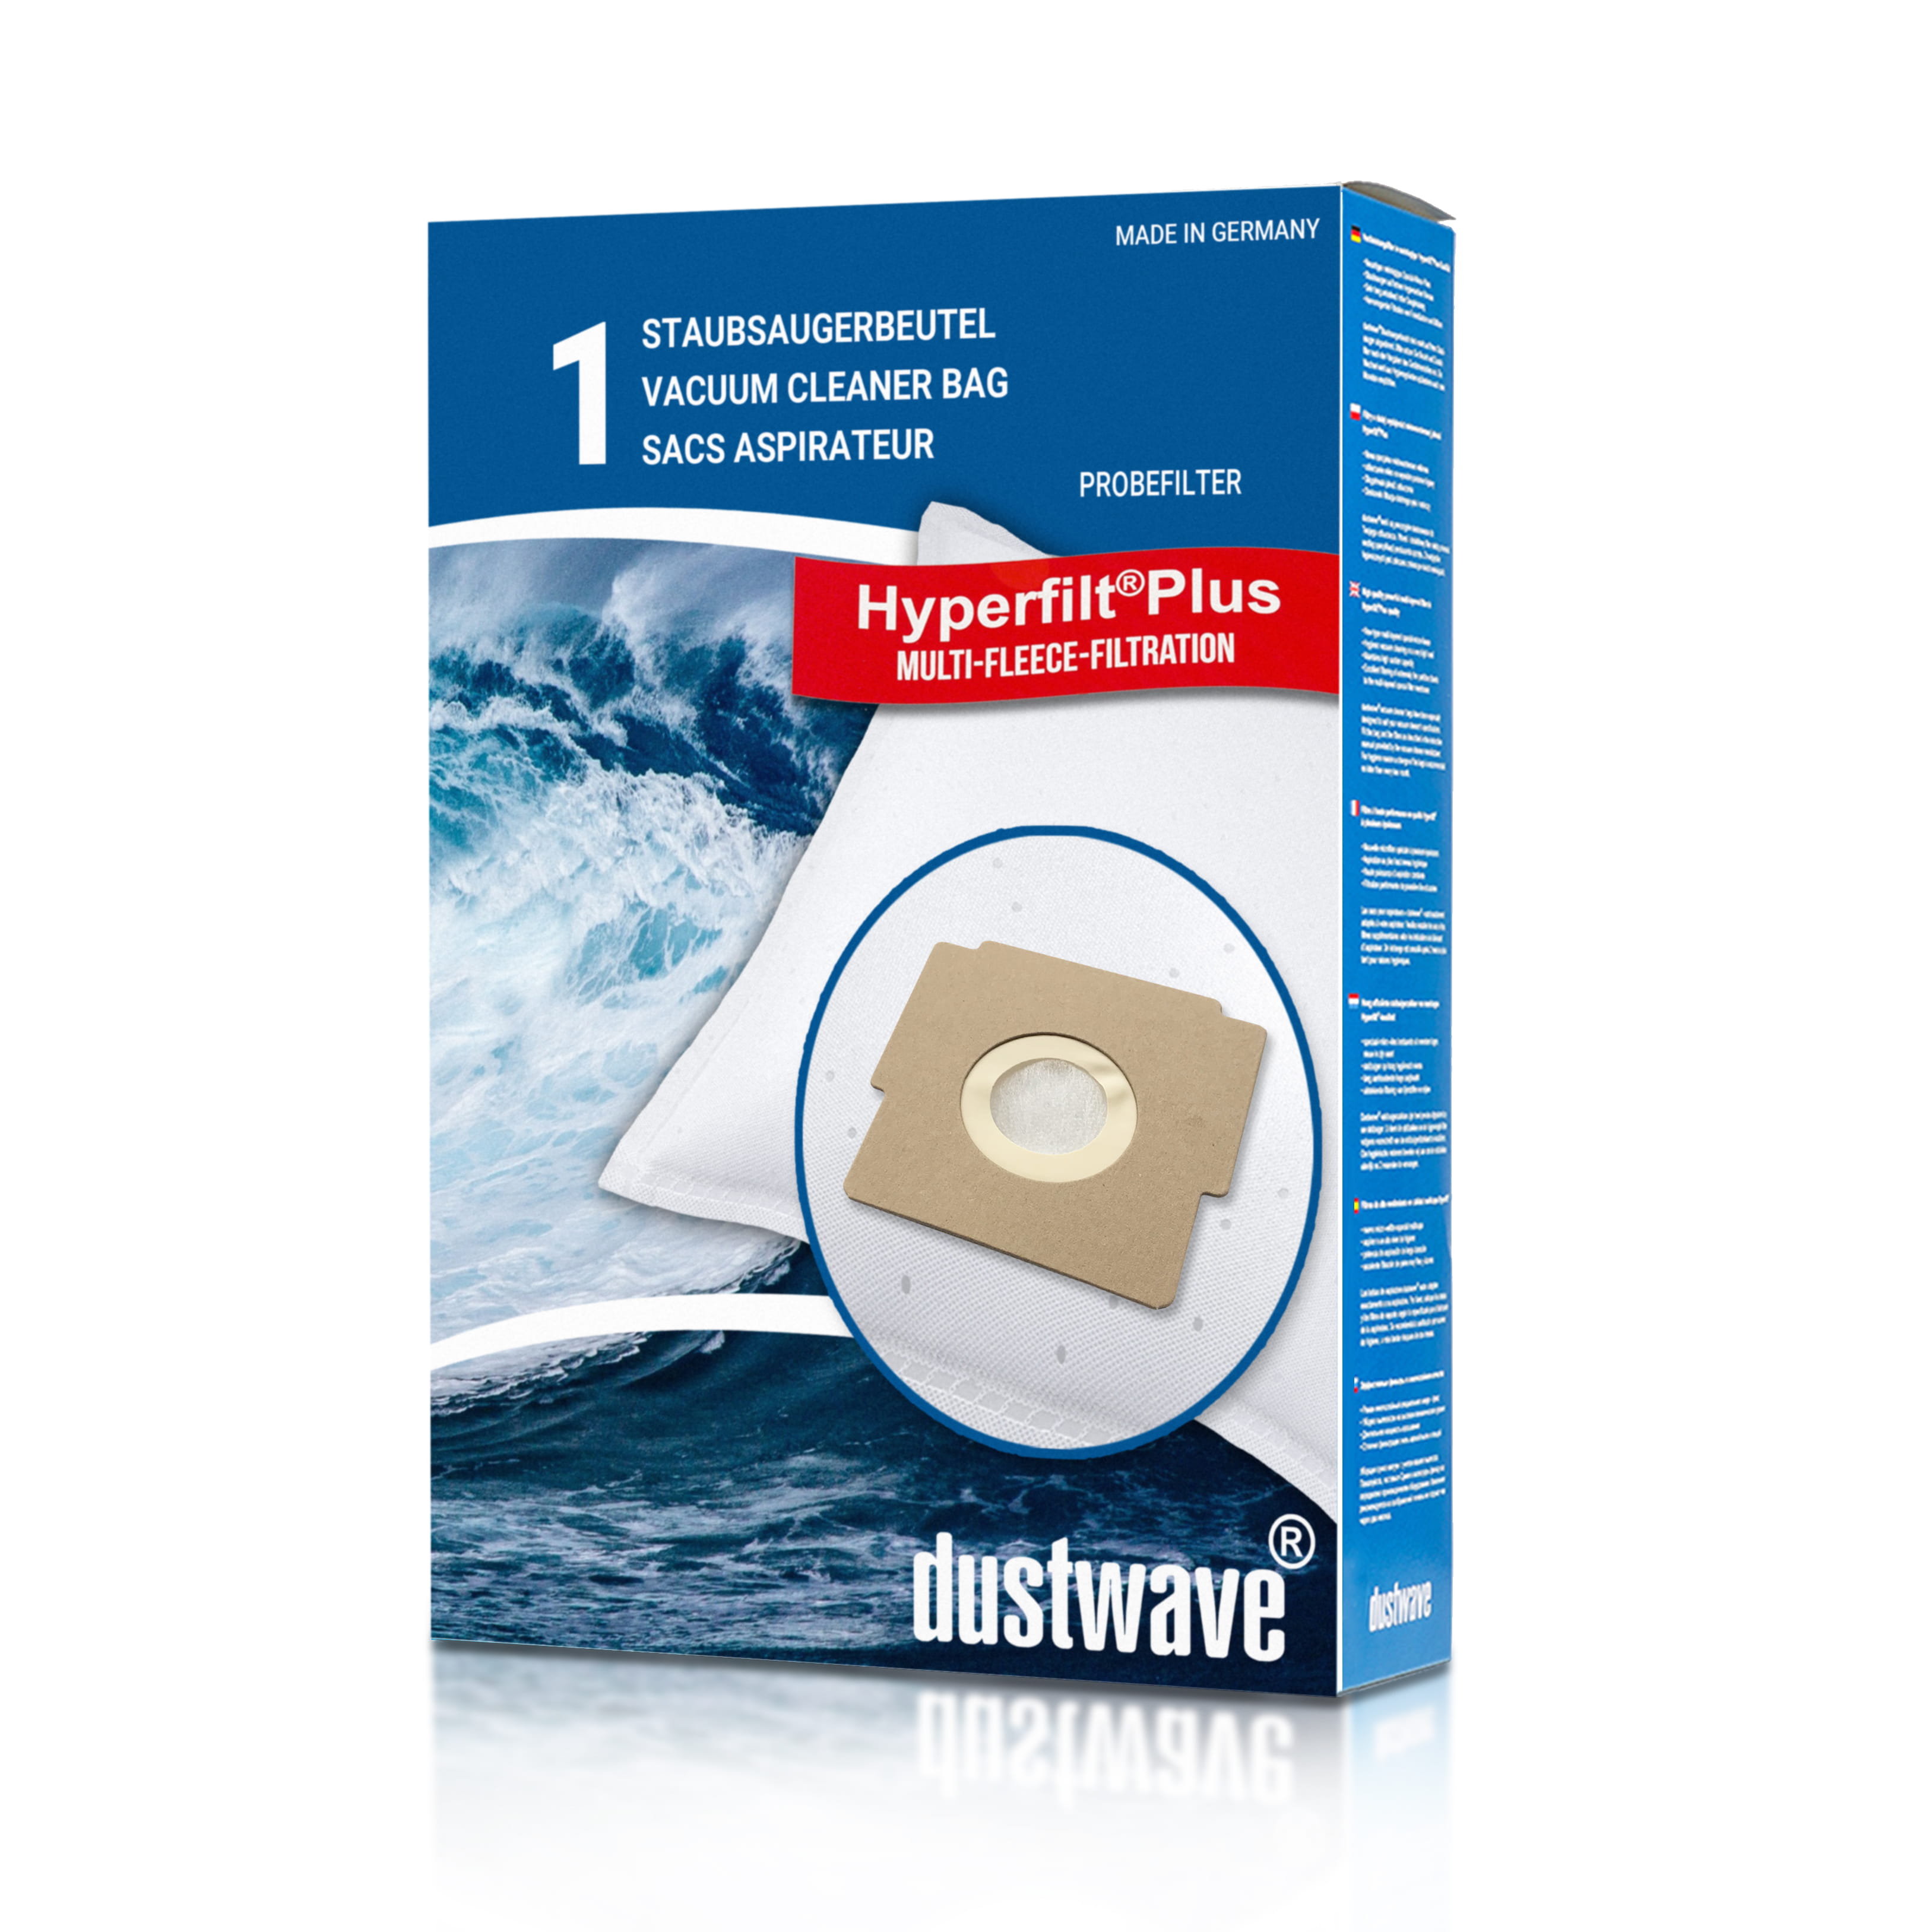 Dustwave® 1 Staubsaugerbeutel für Blue Sky BVC 1500 / BVC1500 - hocheffizient, mehrlagiges Mikrovlies mit Hygieneverschluss - Made in Germany